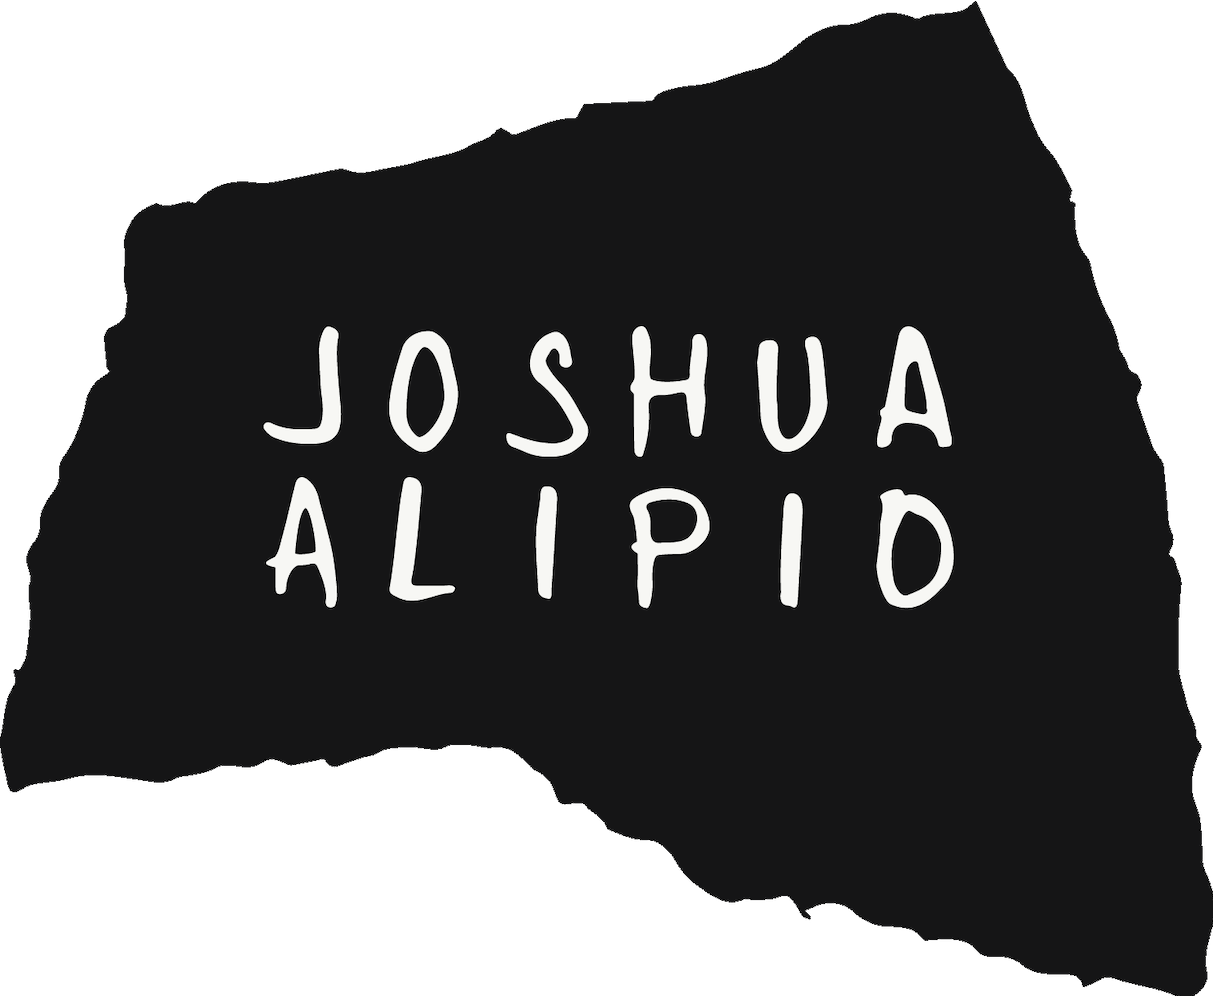 Joshua Alipio